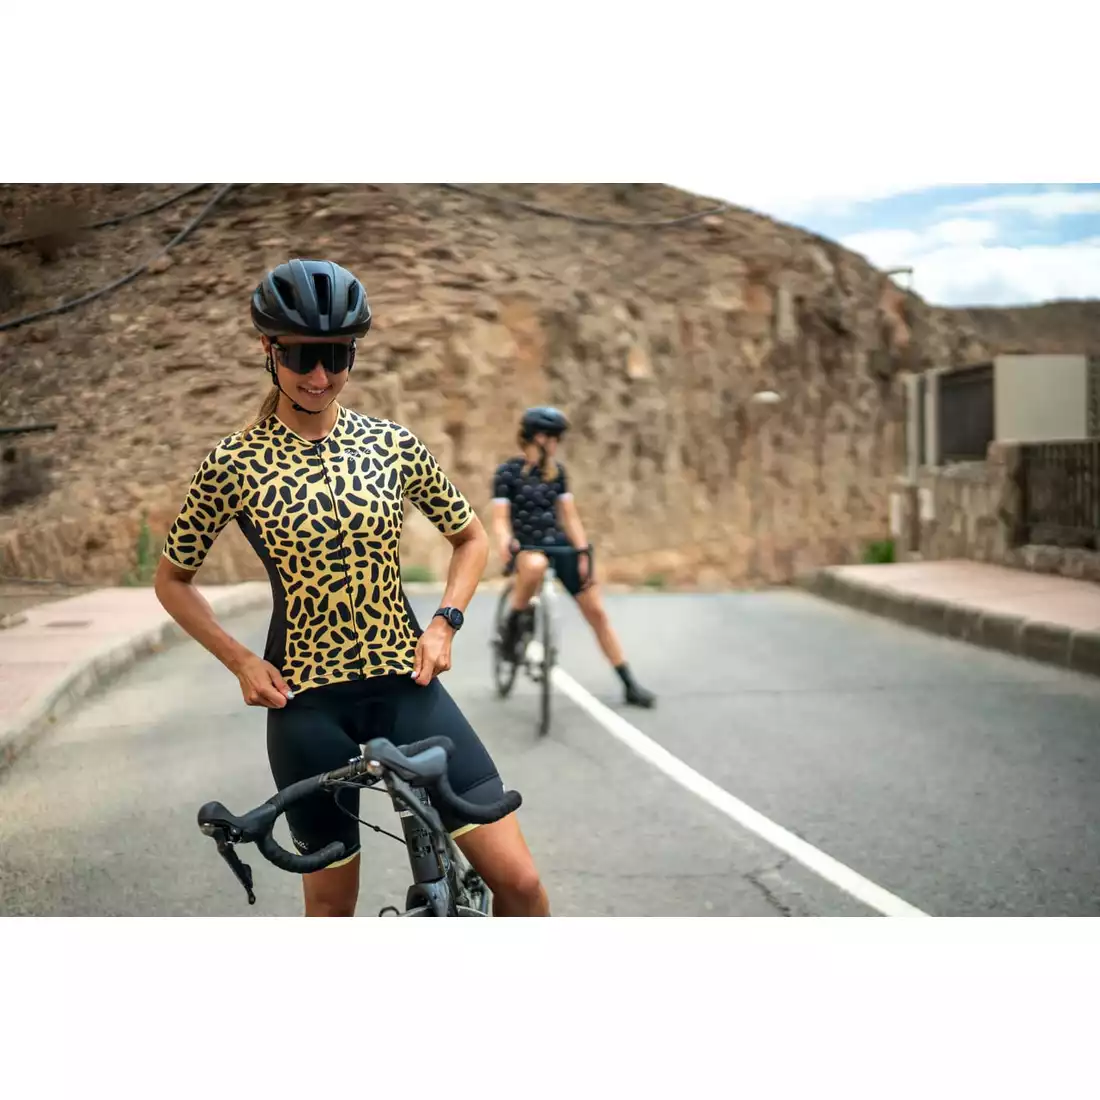 Rogelli ABSTRACT dámský cyklistický dres, žluto-černá